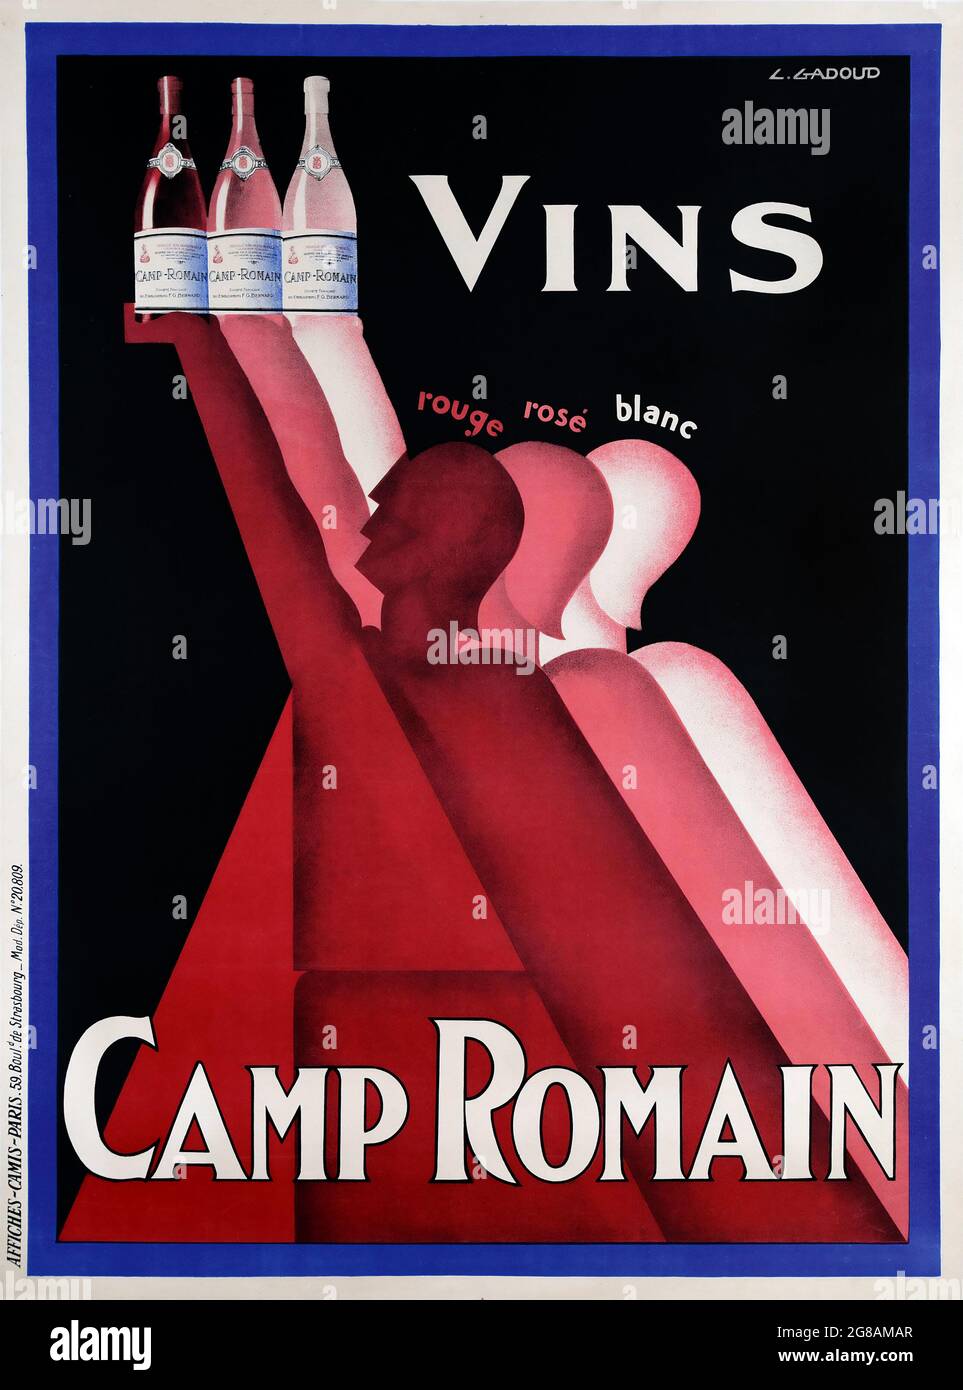 Poster pubblicitario vintage. Vins Camp Romain. Rouge, rosé, blanc. Vino rosso, vino rosato, vino bianco. Un poster in stile art deco stampato intorno al 1930. Foto Stock